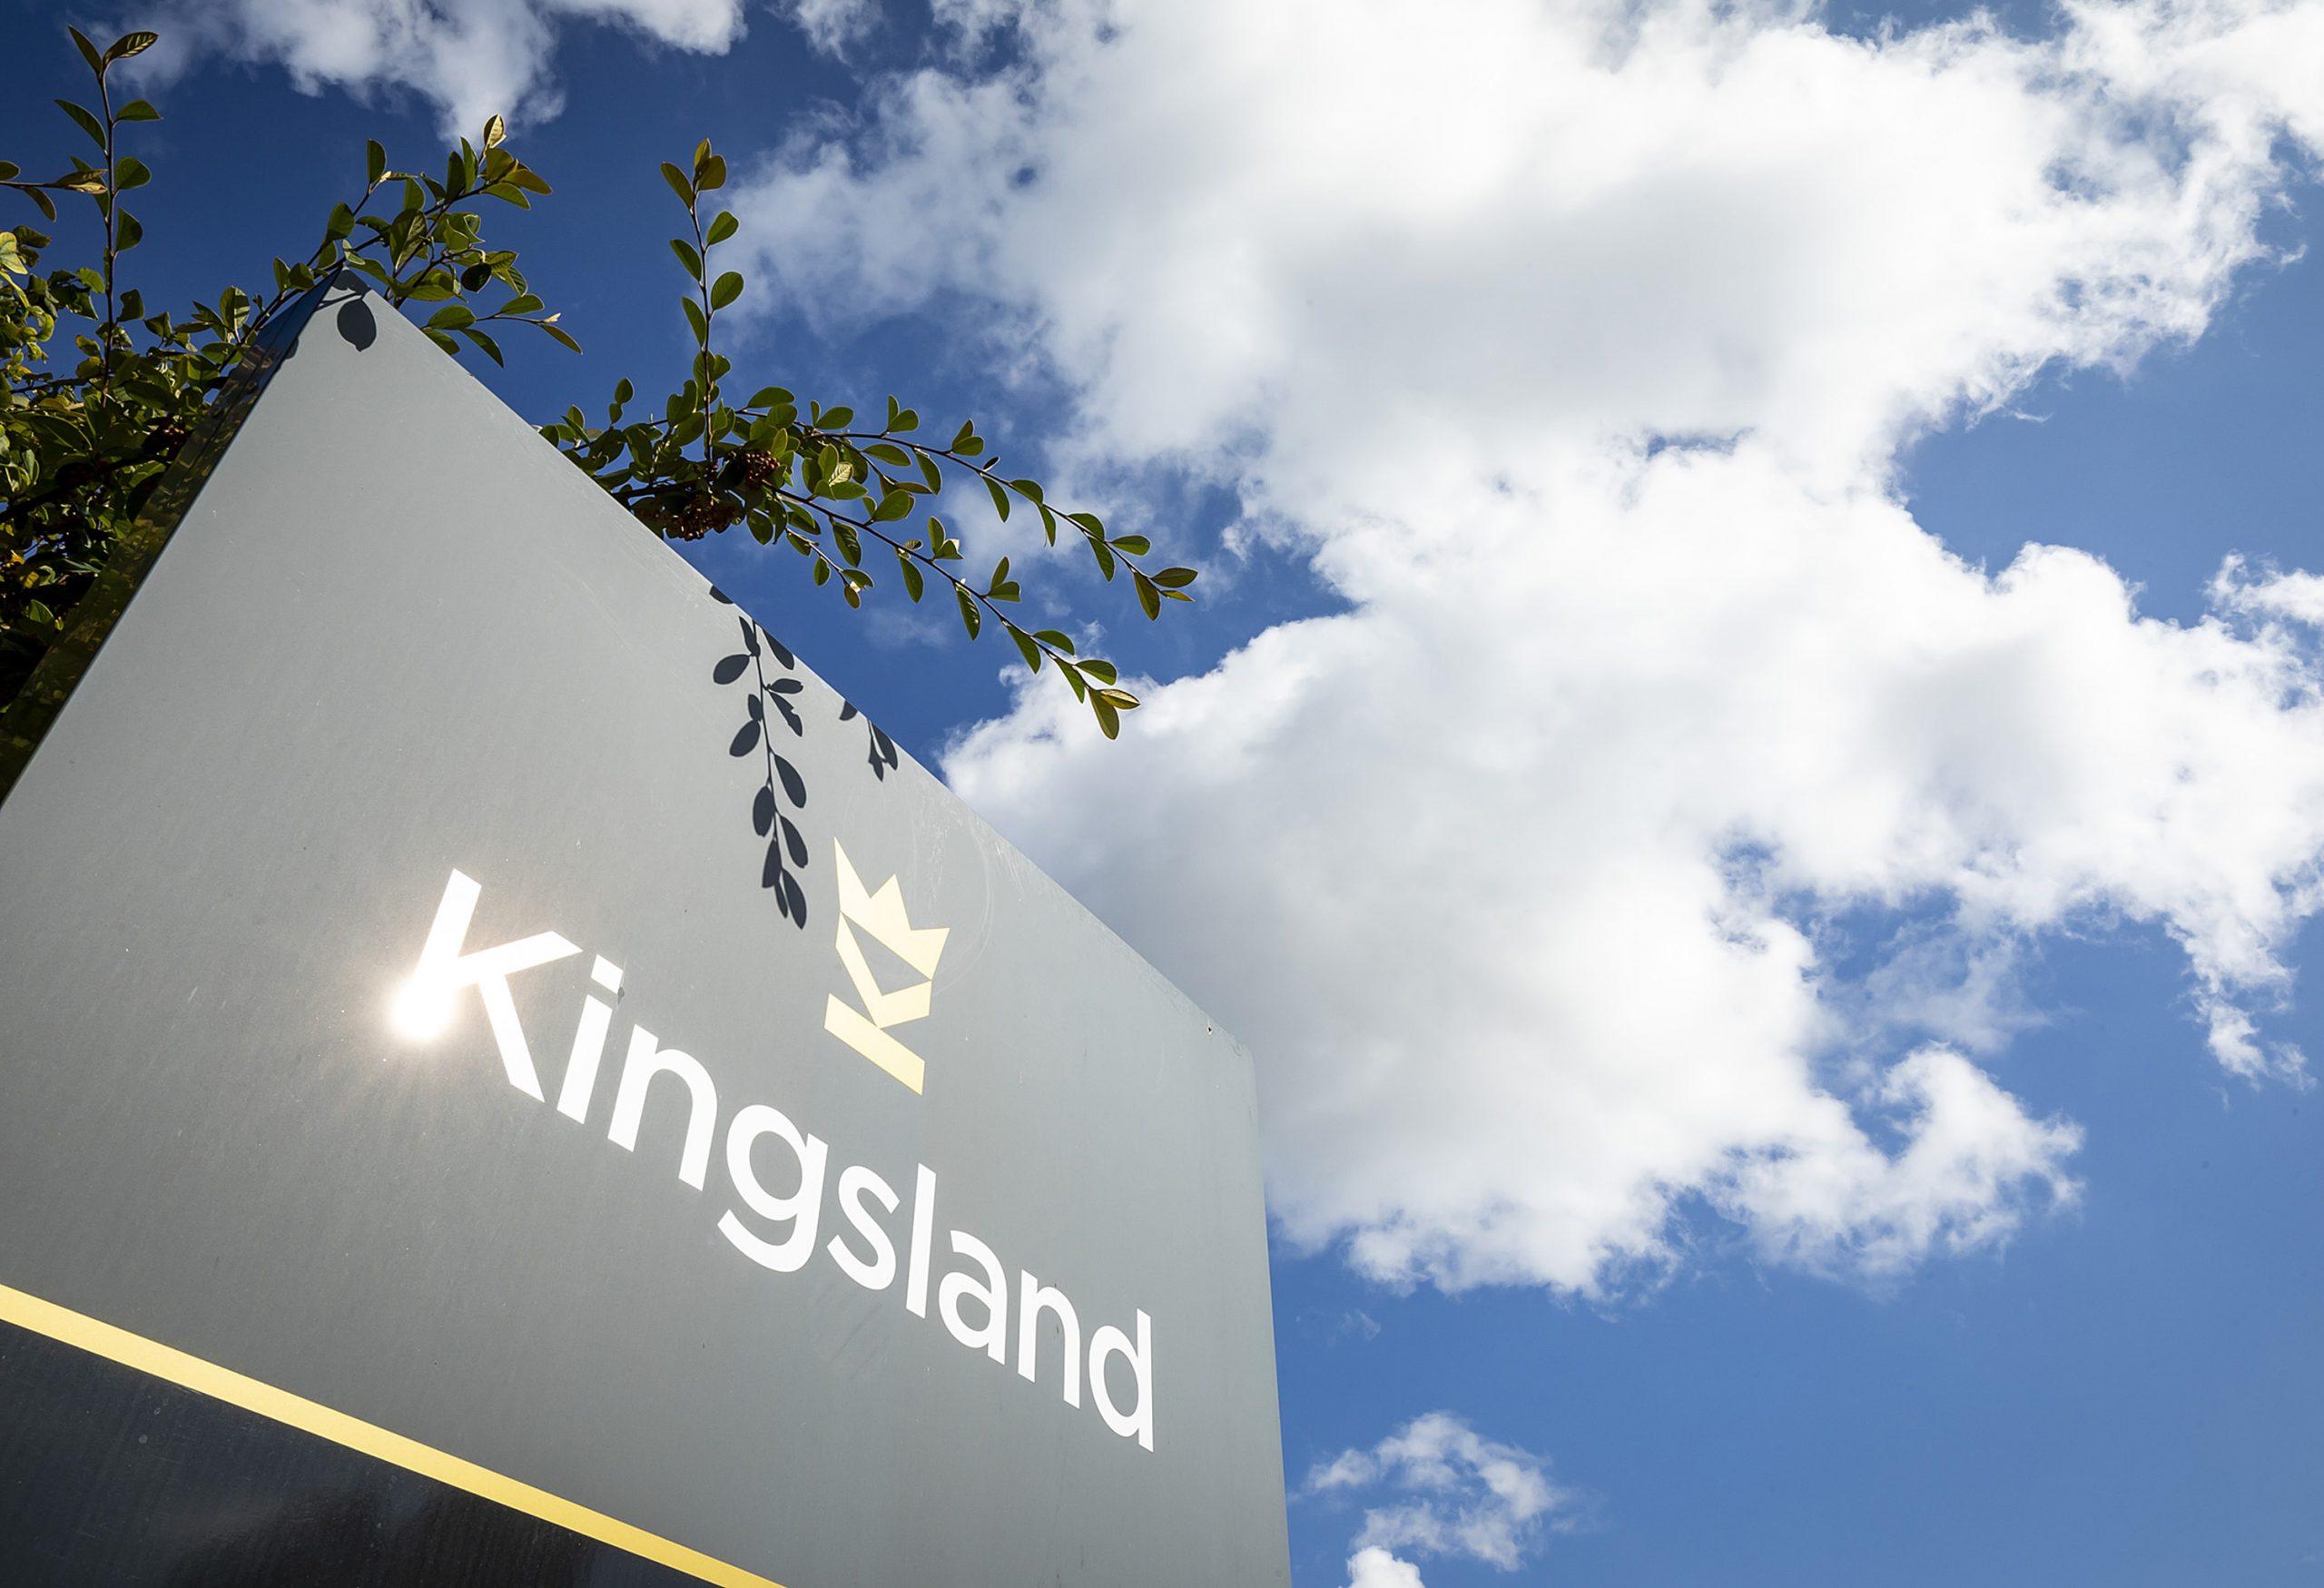 Kingsland sign infront of blue sky